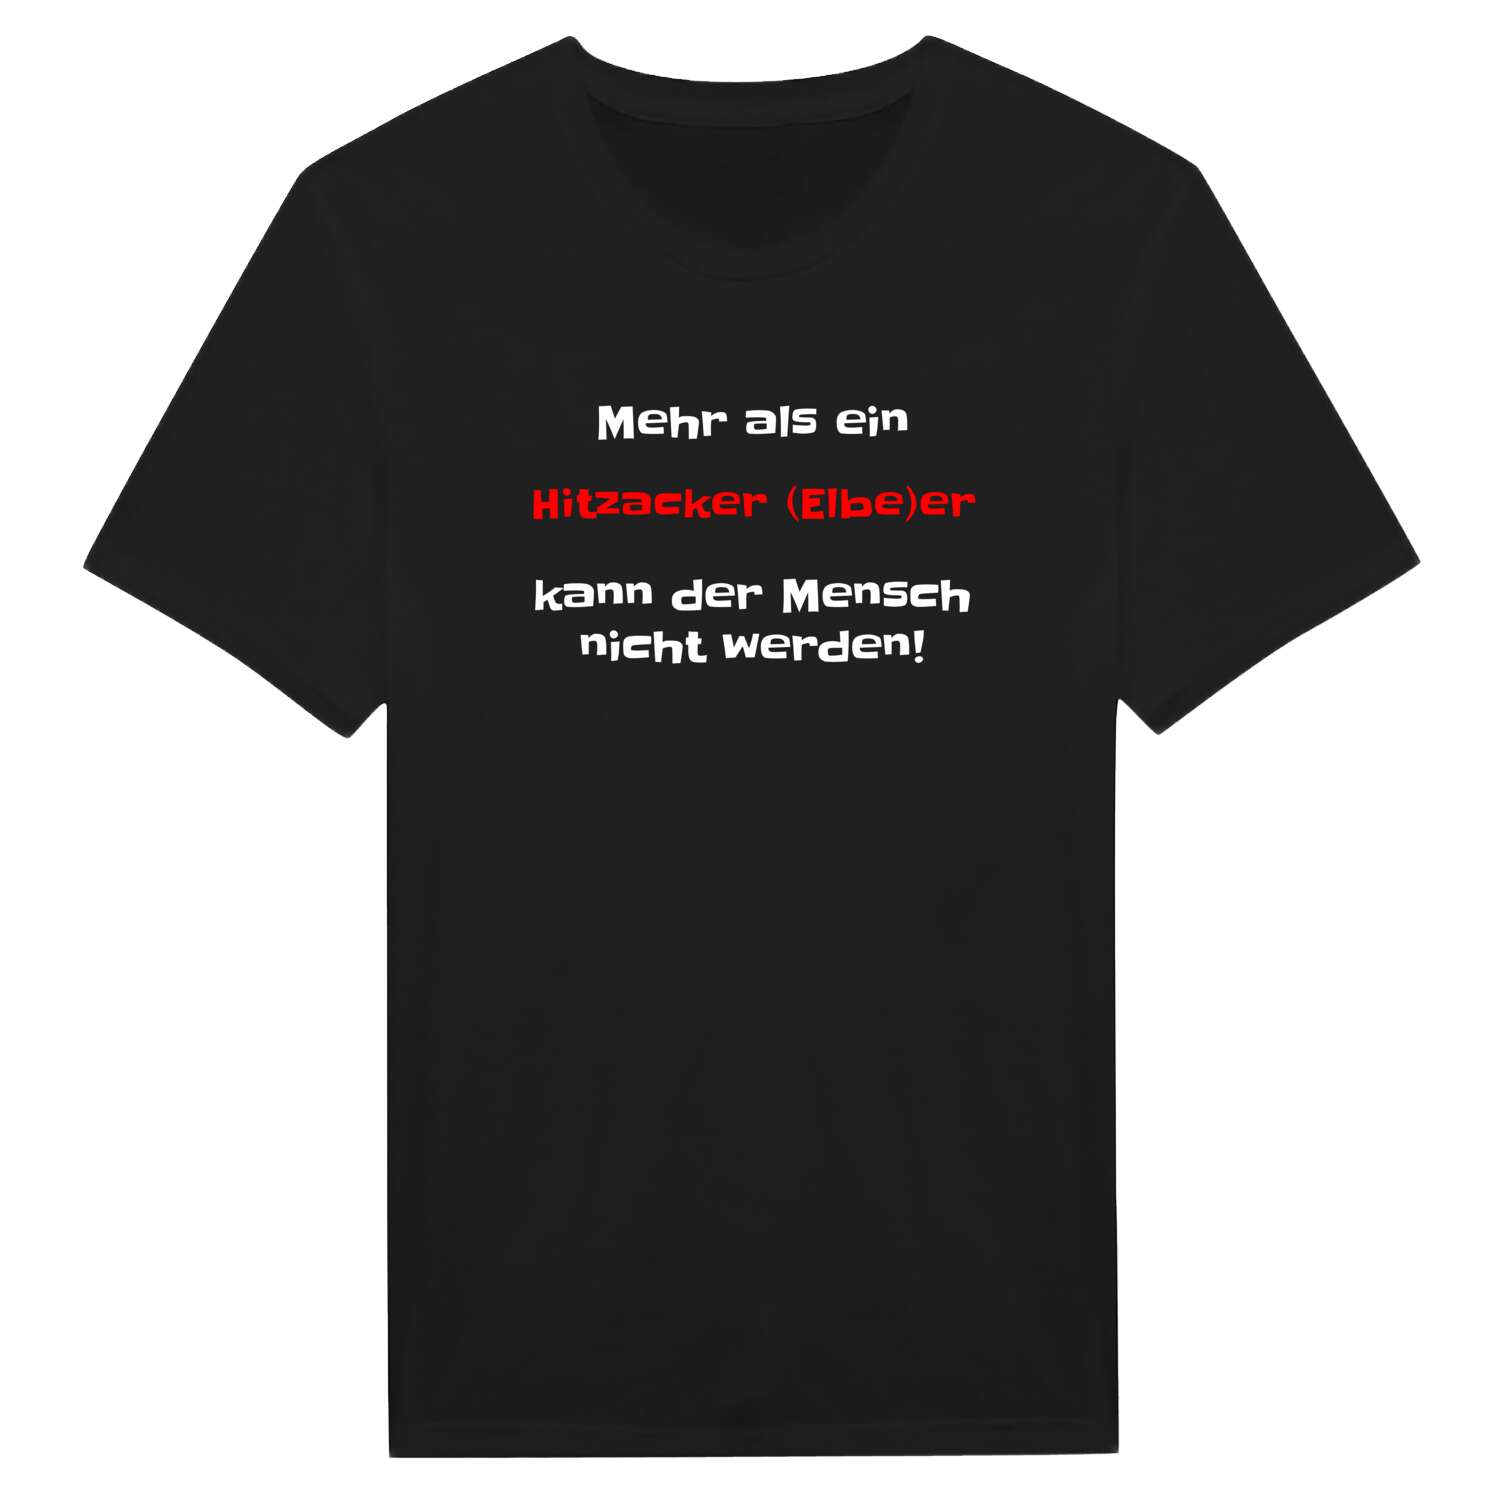 Hitzacker (Elbe) T-Shirt »Mehr als ein«